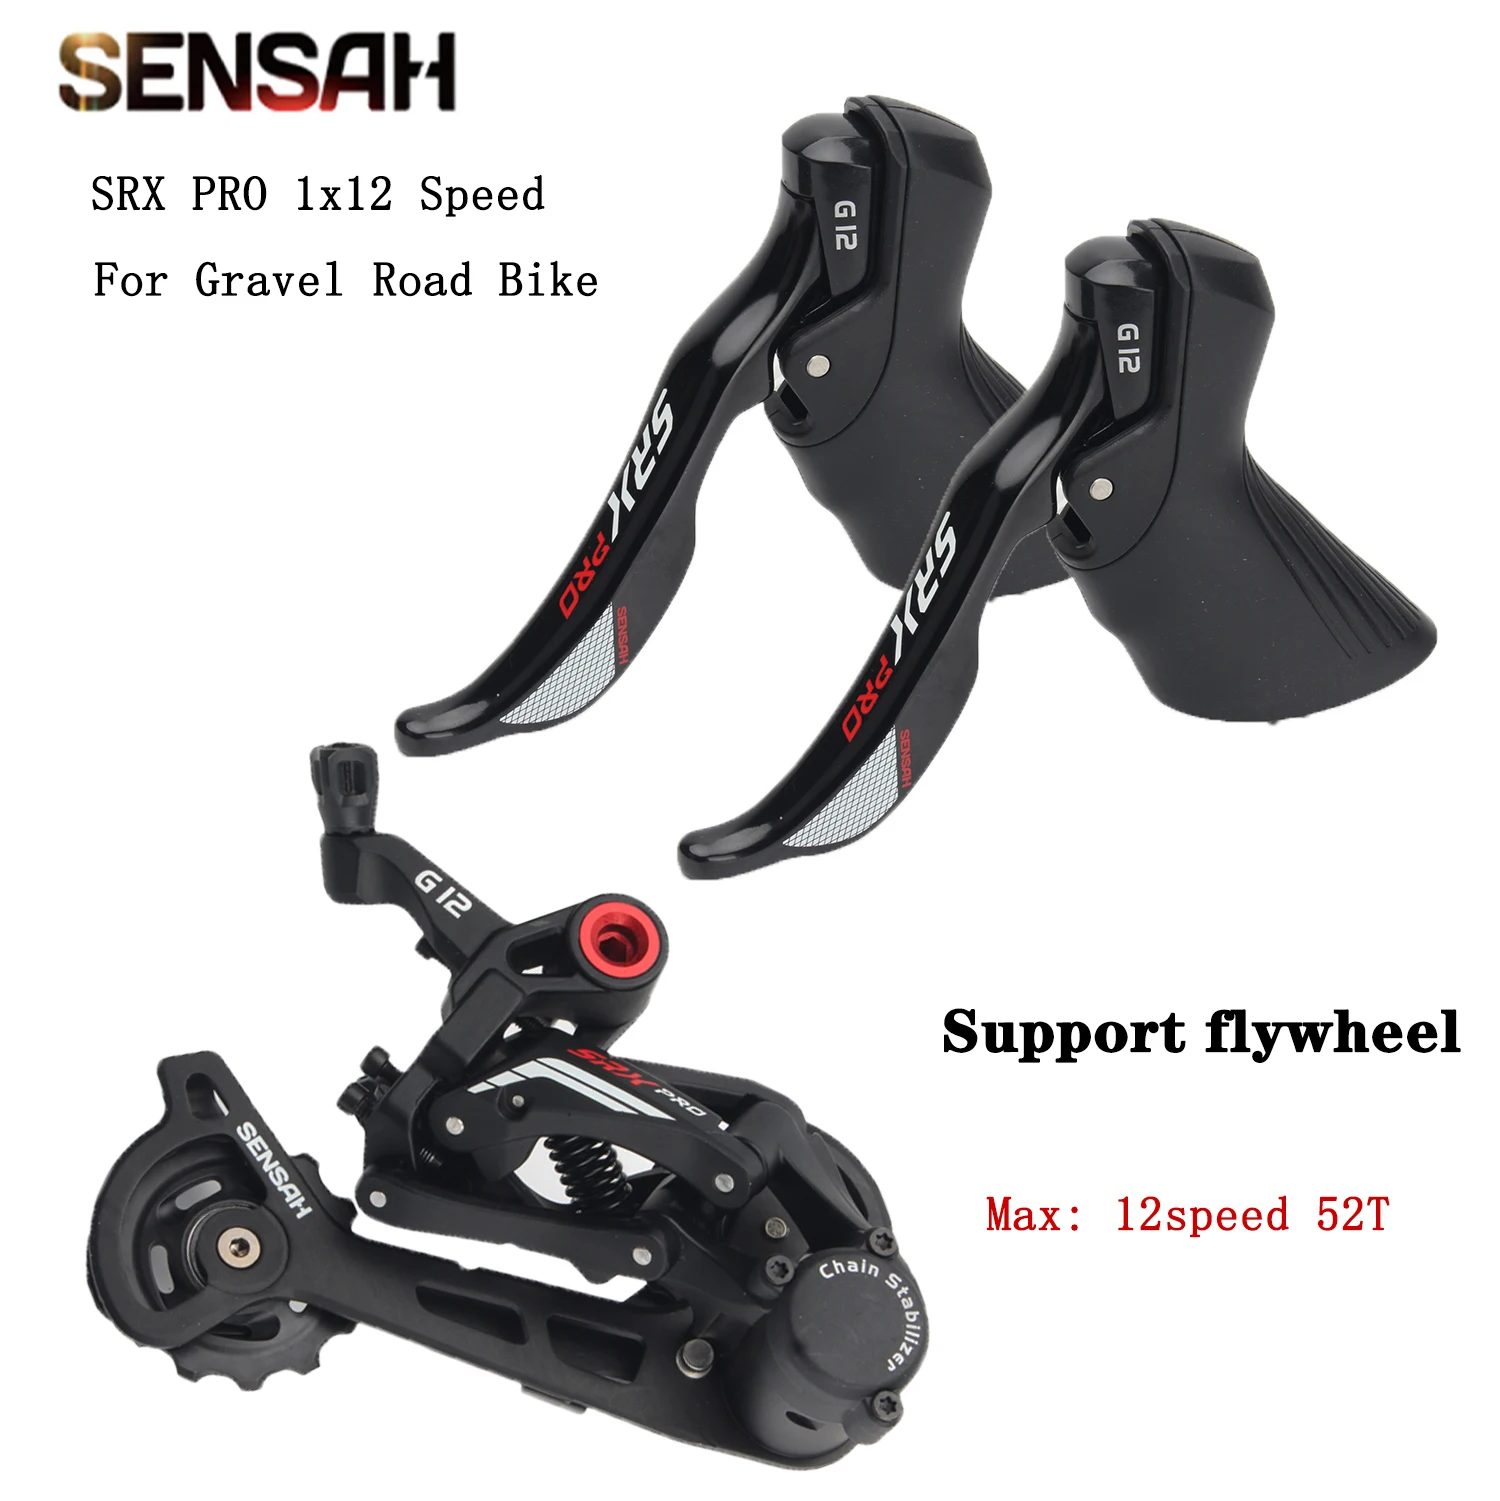 

2 скоростные шоссейные велосипеды SENSAH SRX PRO 1x1, переключатели передач для внедорожного велосипеда, задний переключатель передач, детали для гравийного велосипеда